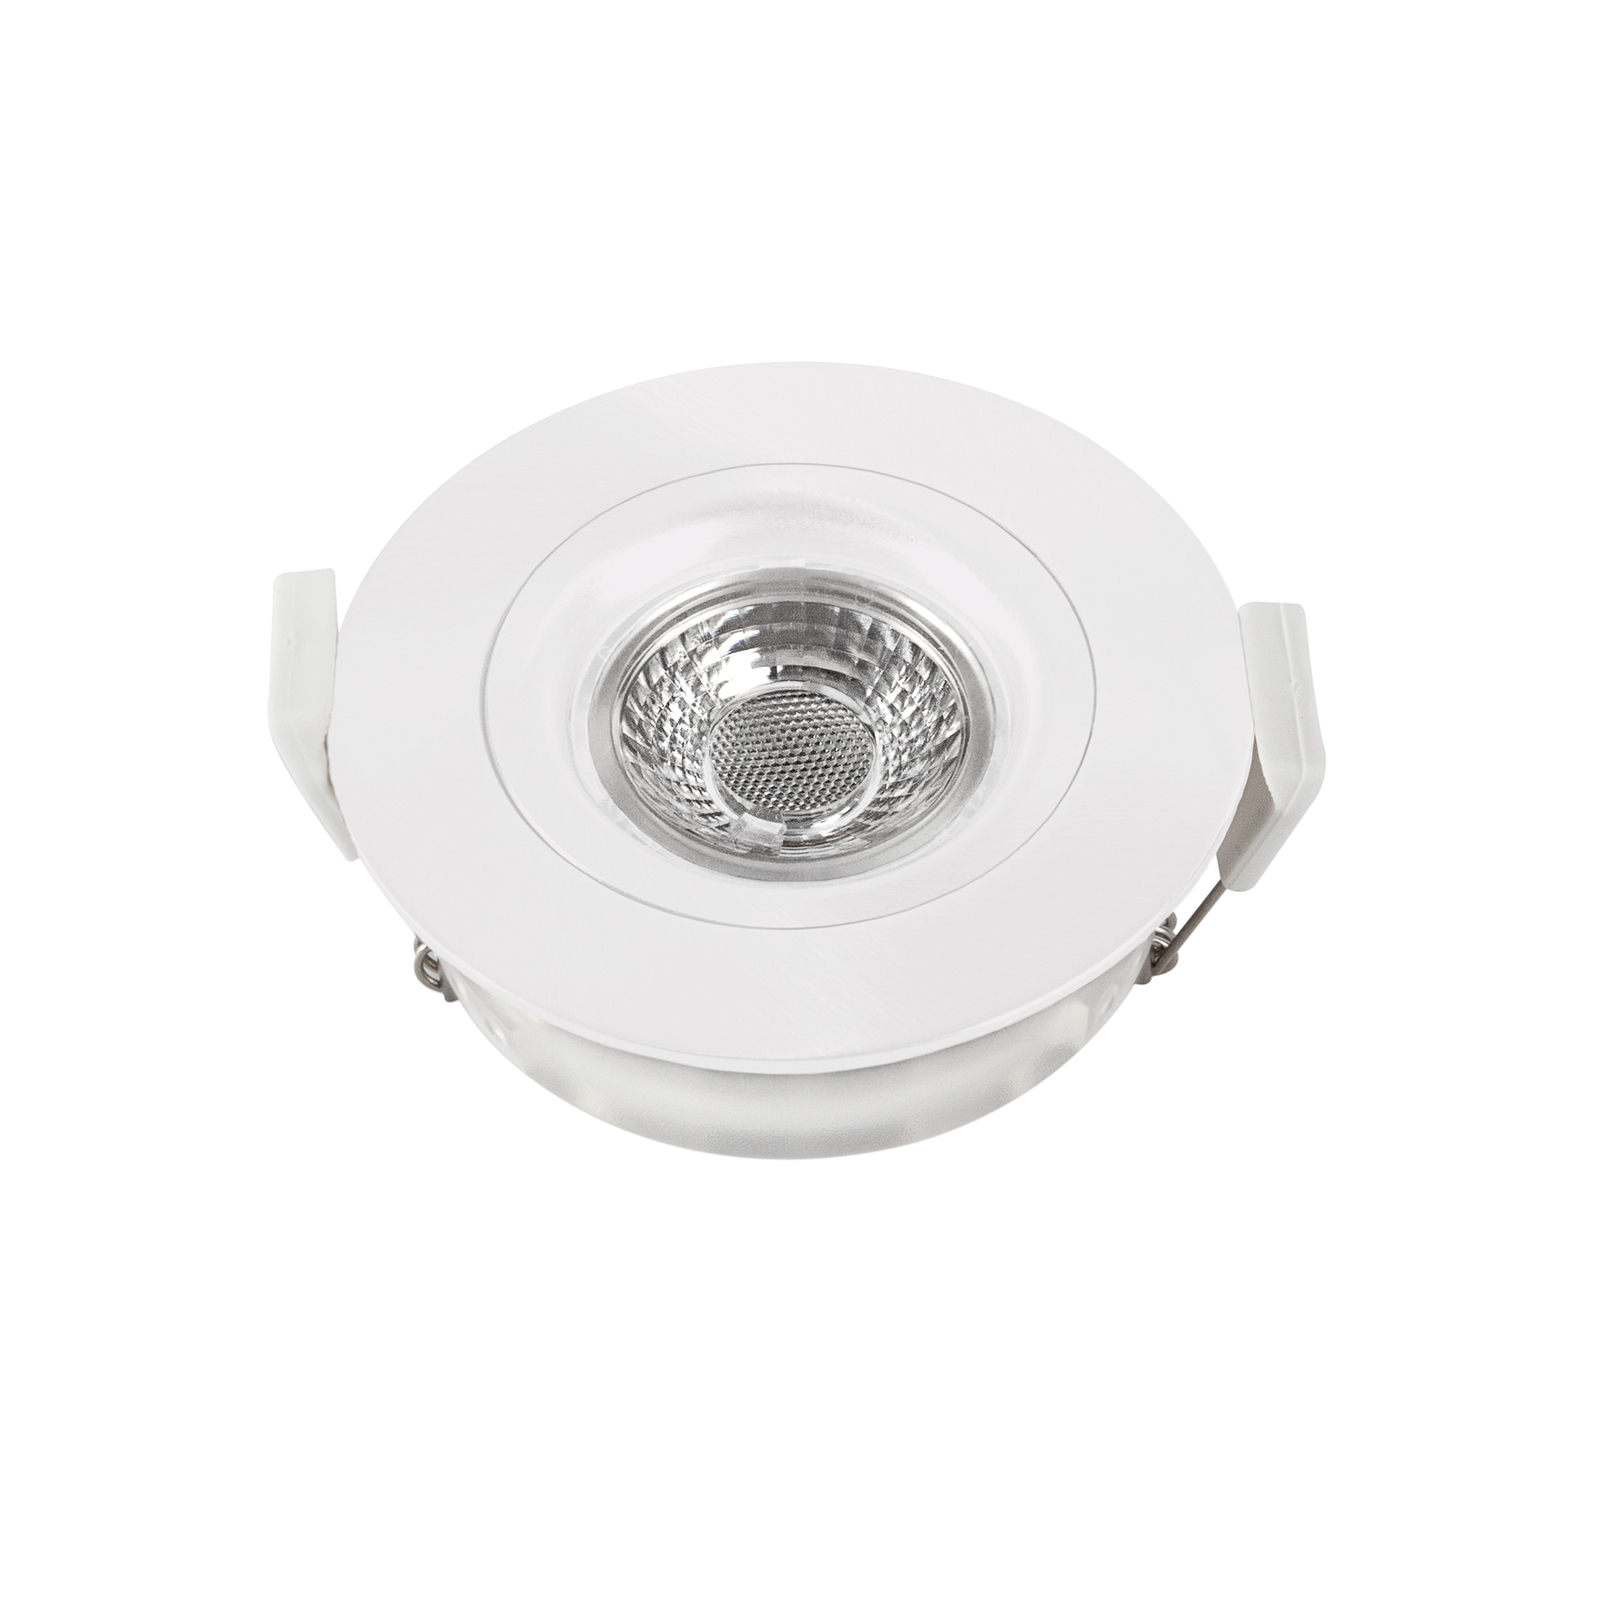 Downlight LED DL6809, okrągły, biały